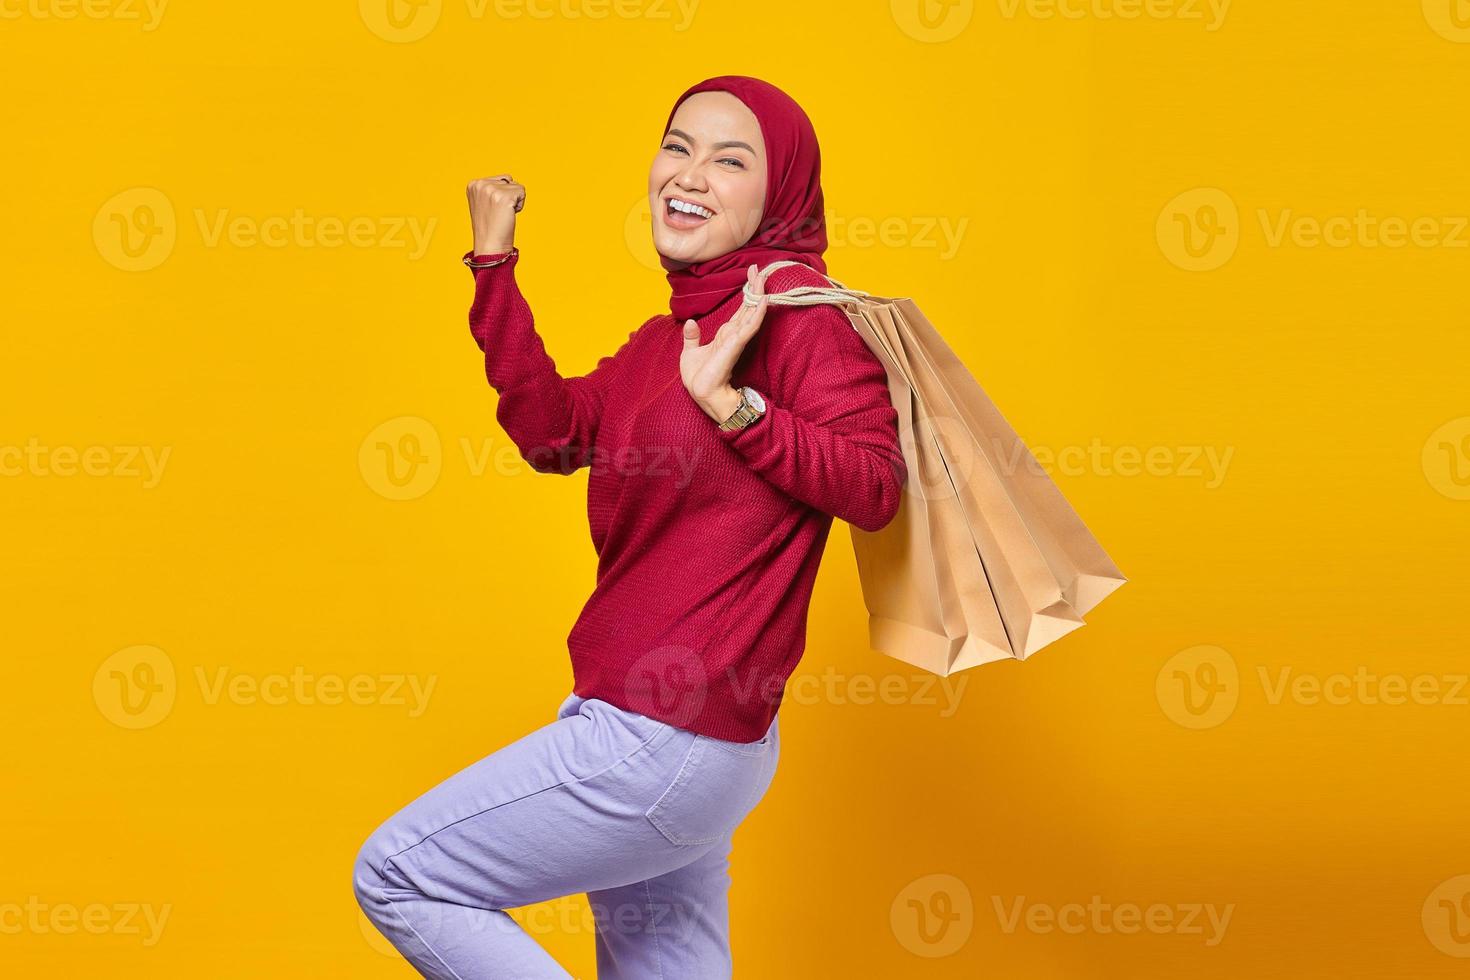 animada e alegre jovem asiática segurando sacolas de compras em fundo amarelo foto